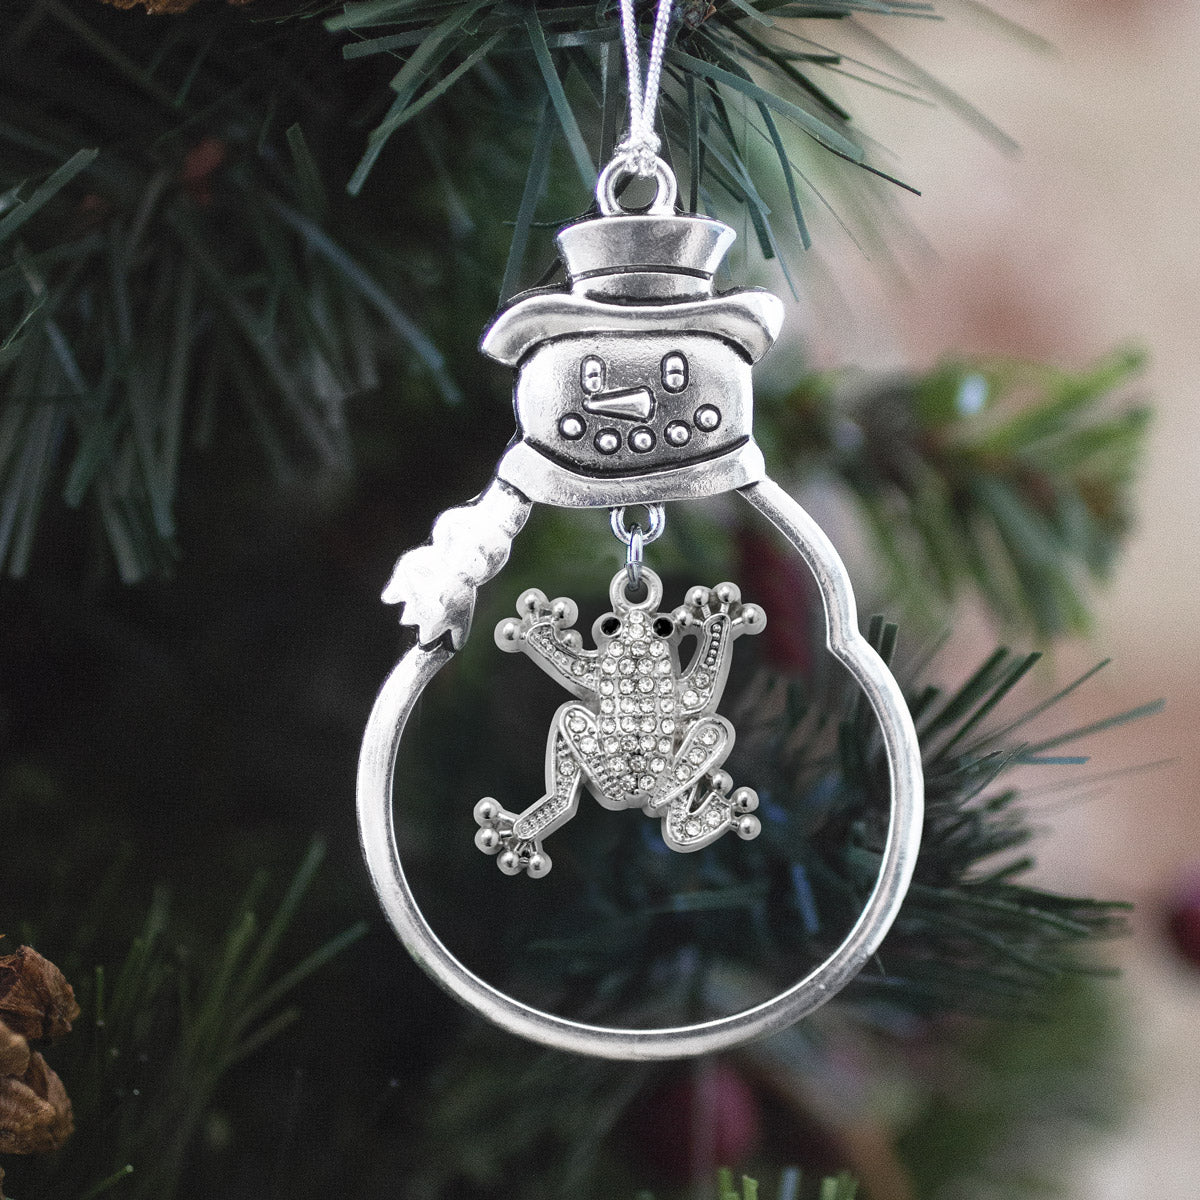 1.0 Carat Frog Charm Christmas / Holiday Ornament